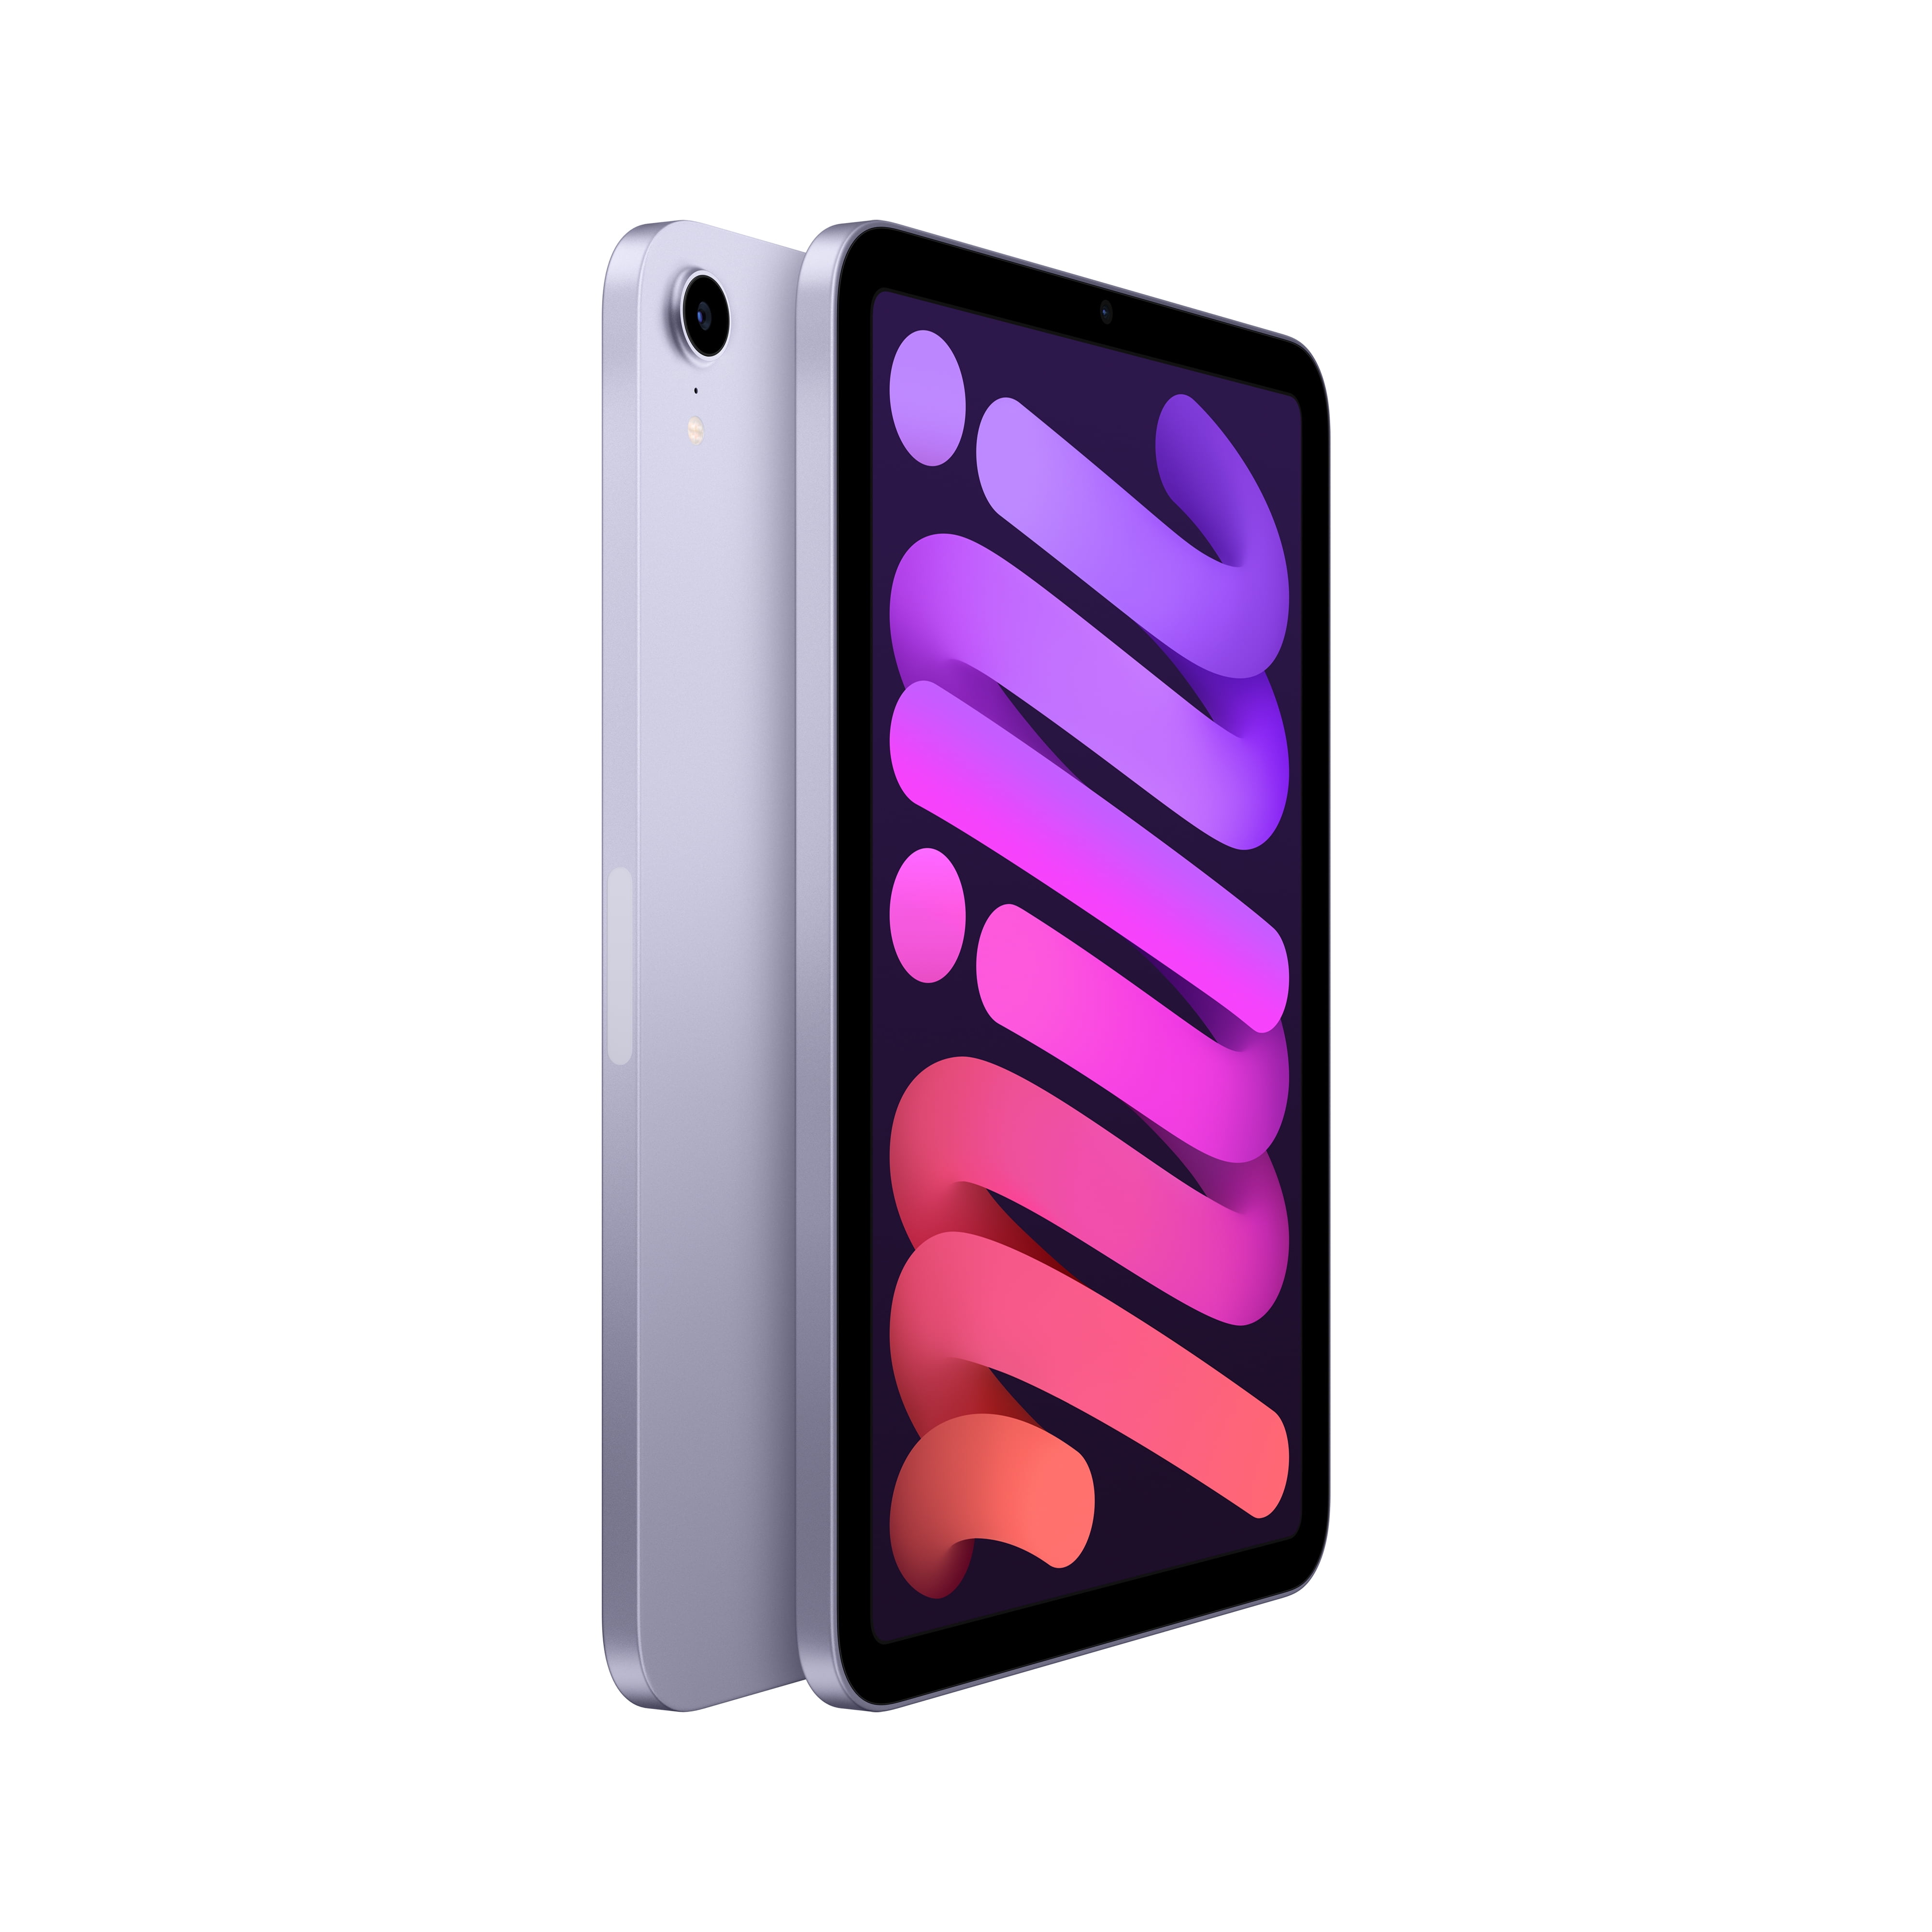 2021 Apple iPad Mini Wi-Fi 64GB - Purple (6th Generation)